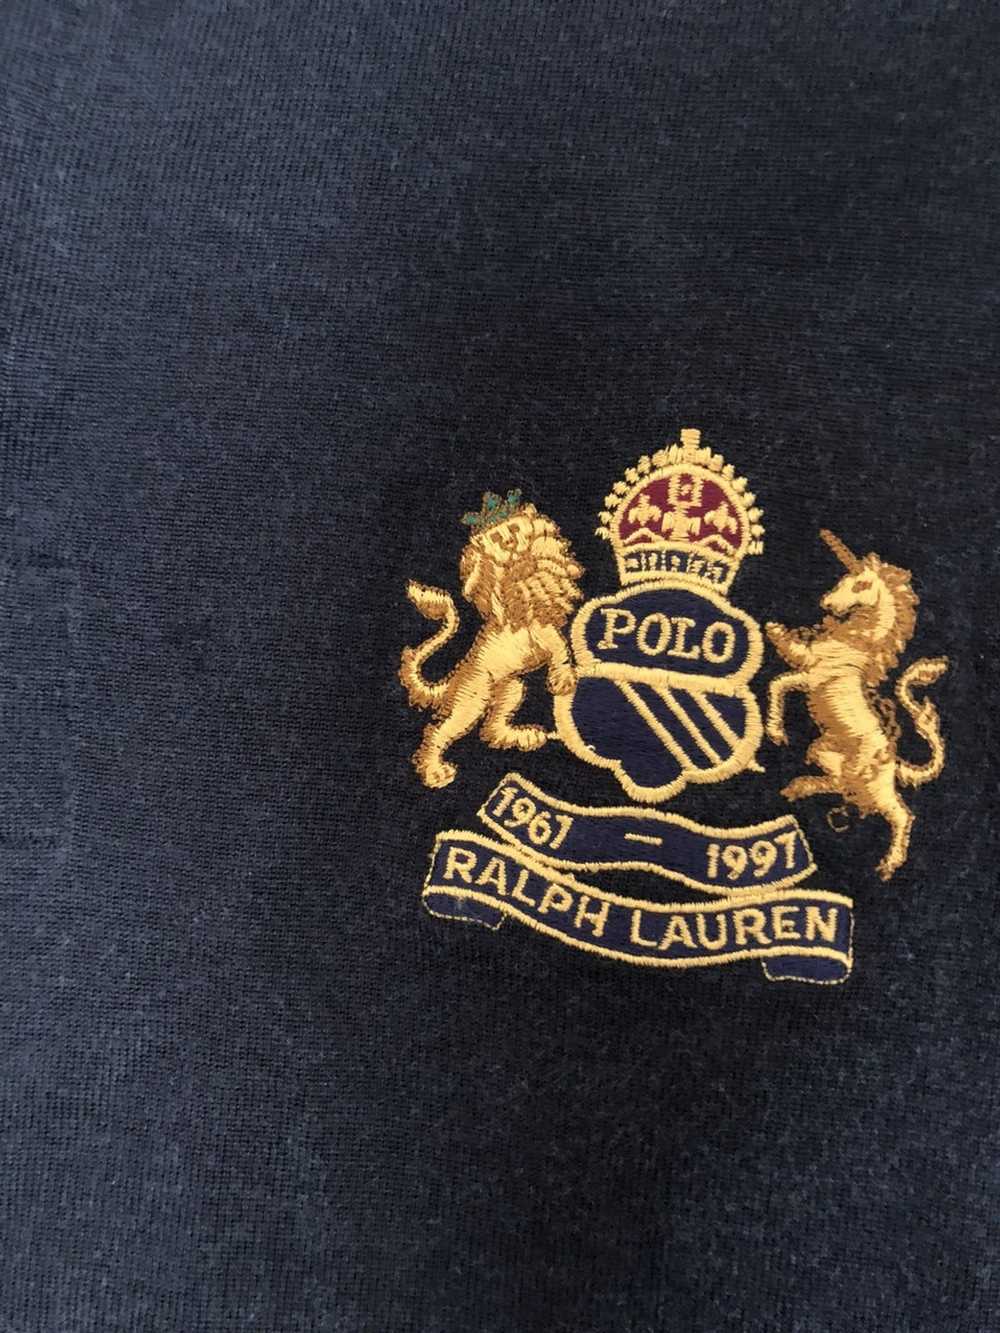 Polo Ralph Lauren × Ralph Lauren Rugby × Vintage … - image 5